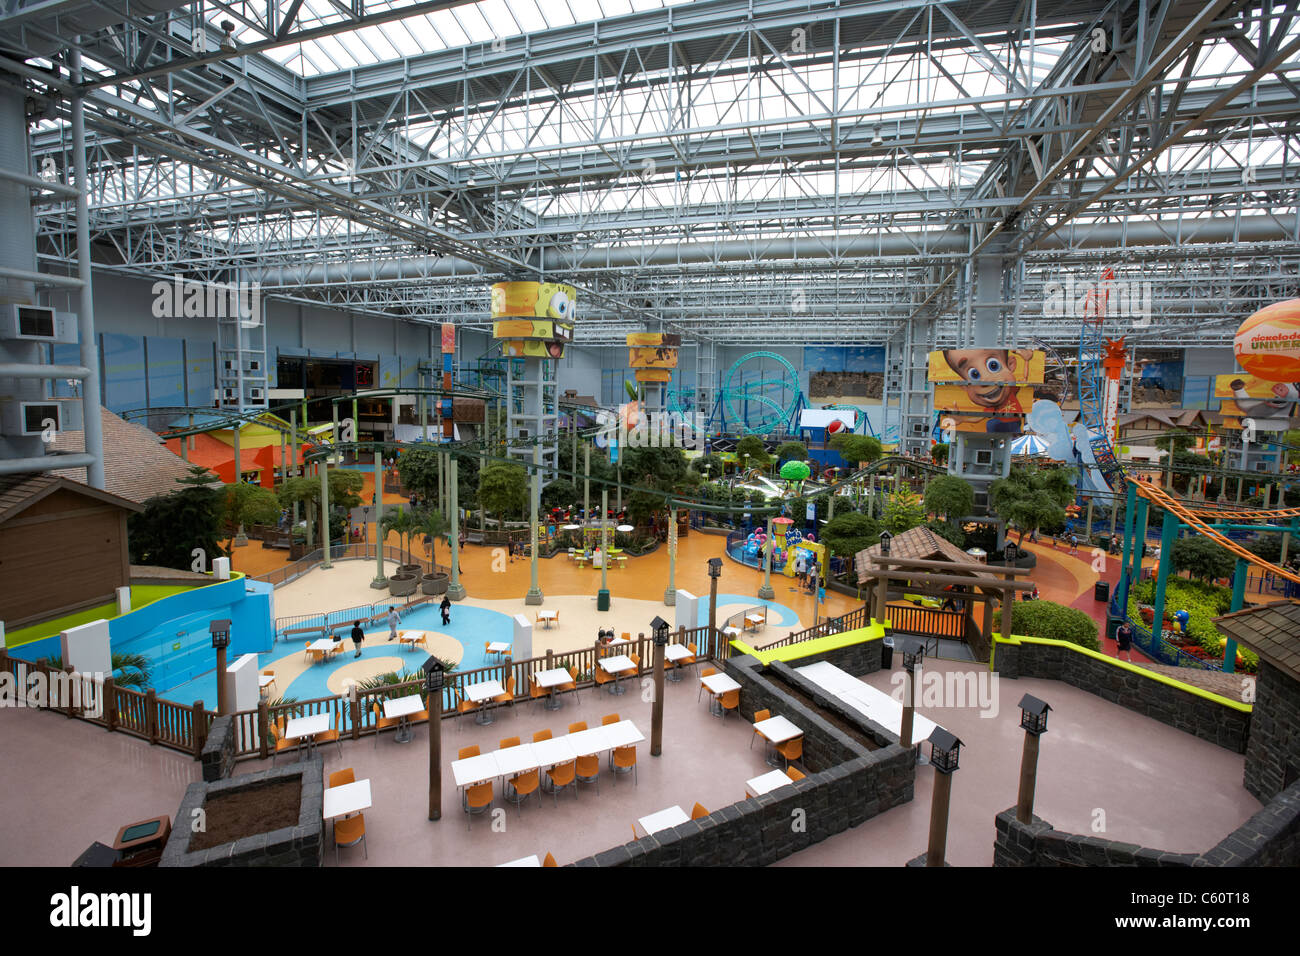 Nickelodeon universe theme park dans le centre commercial Mall of America à bloomington au Minnesota, États-Unis d'Amérique Banque D'Images